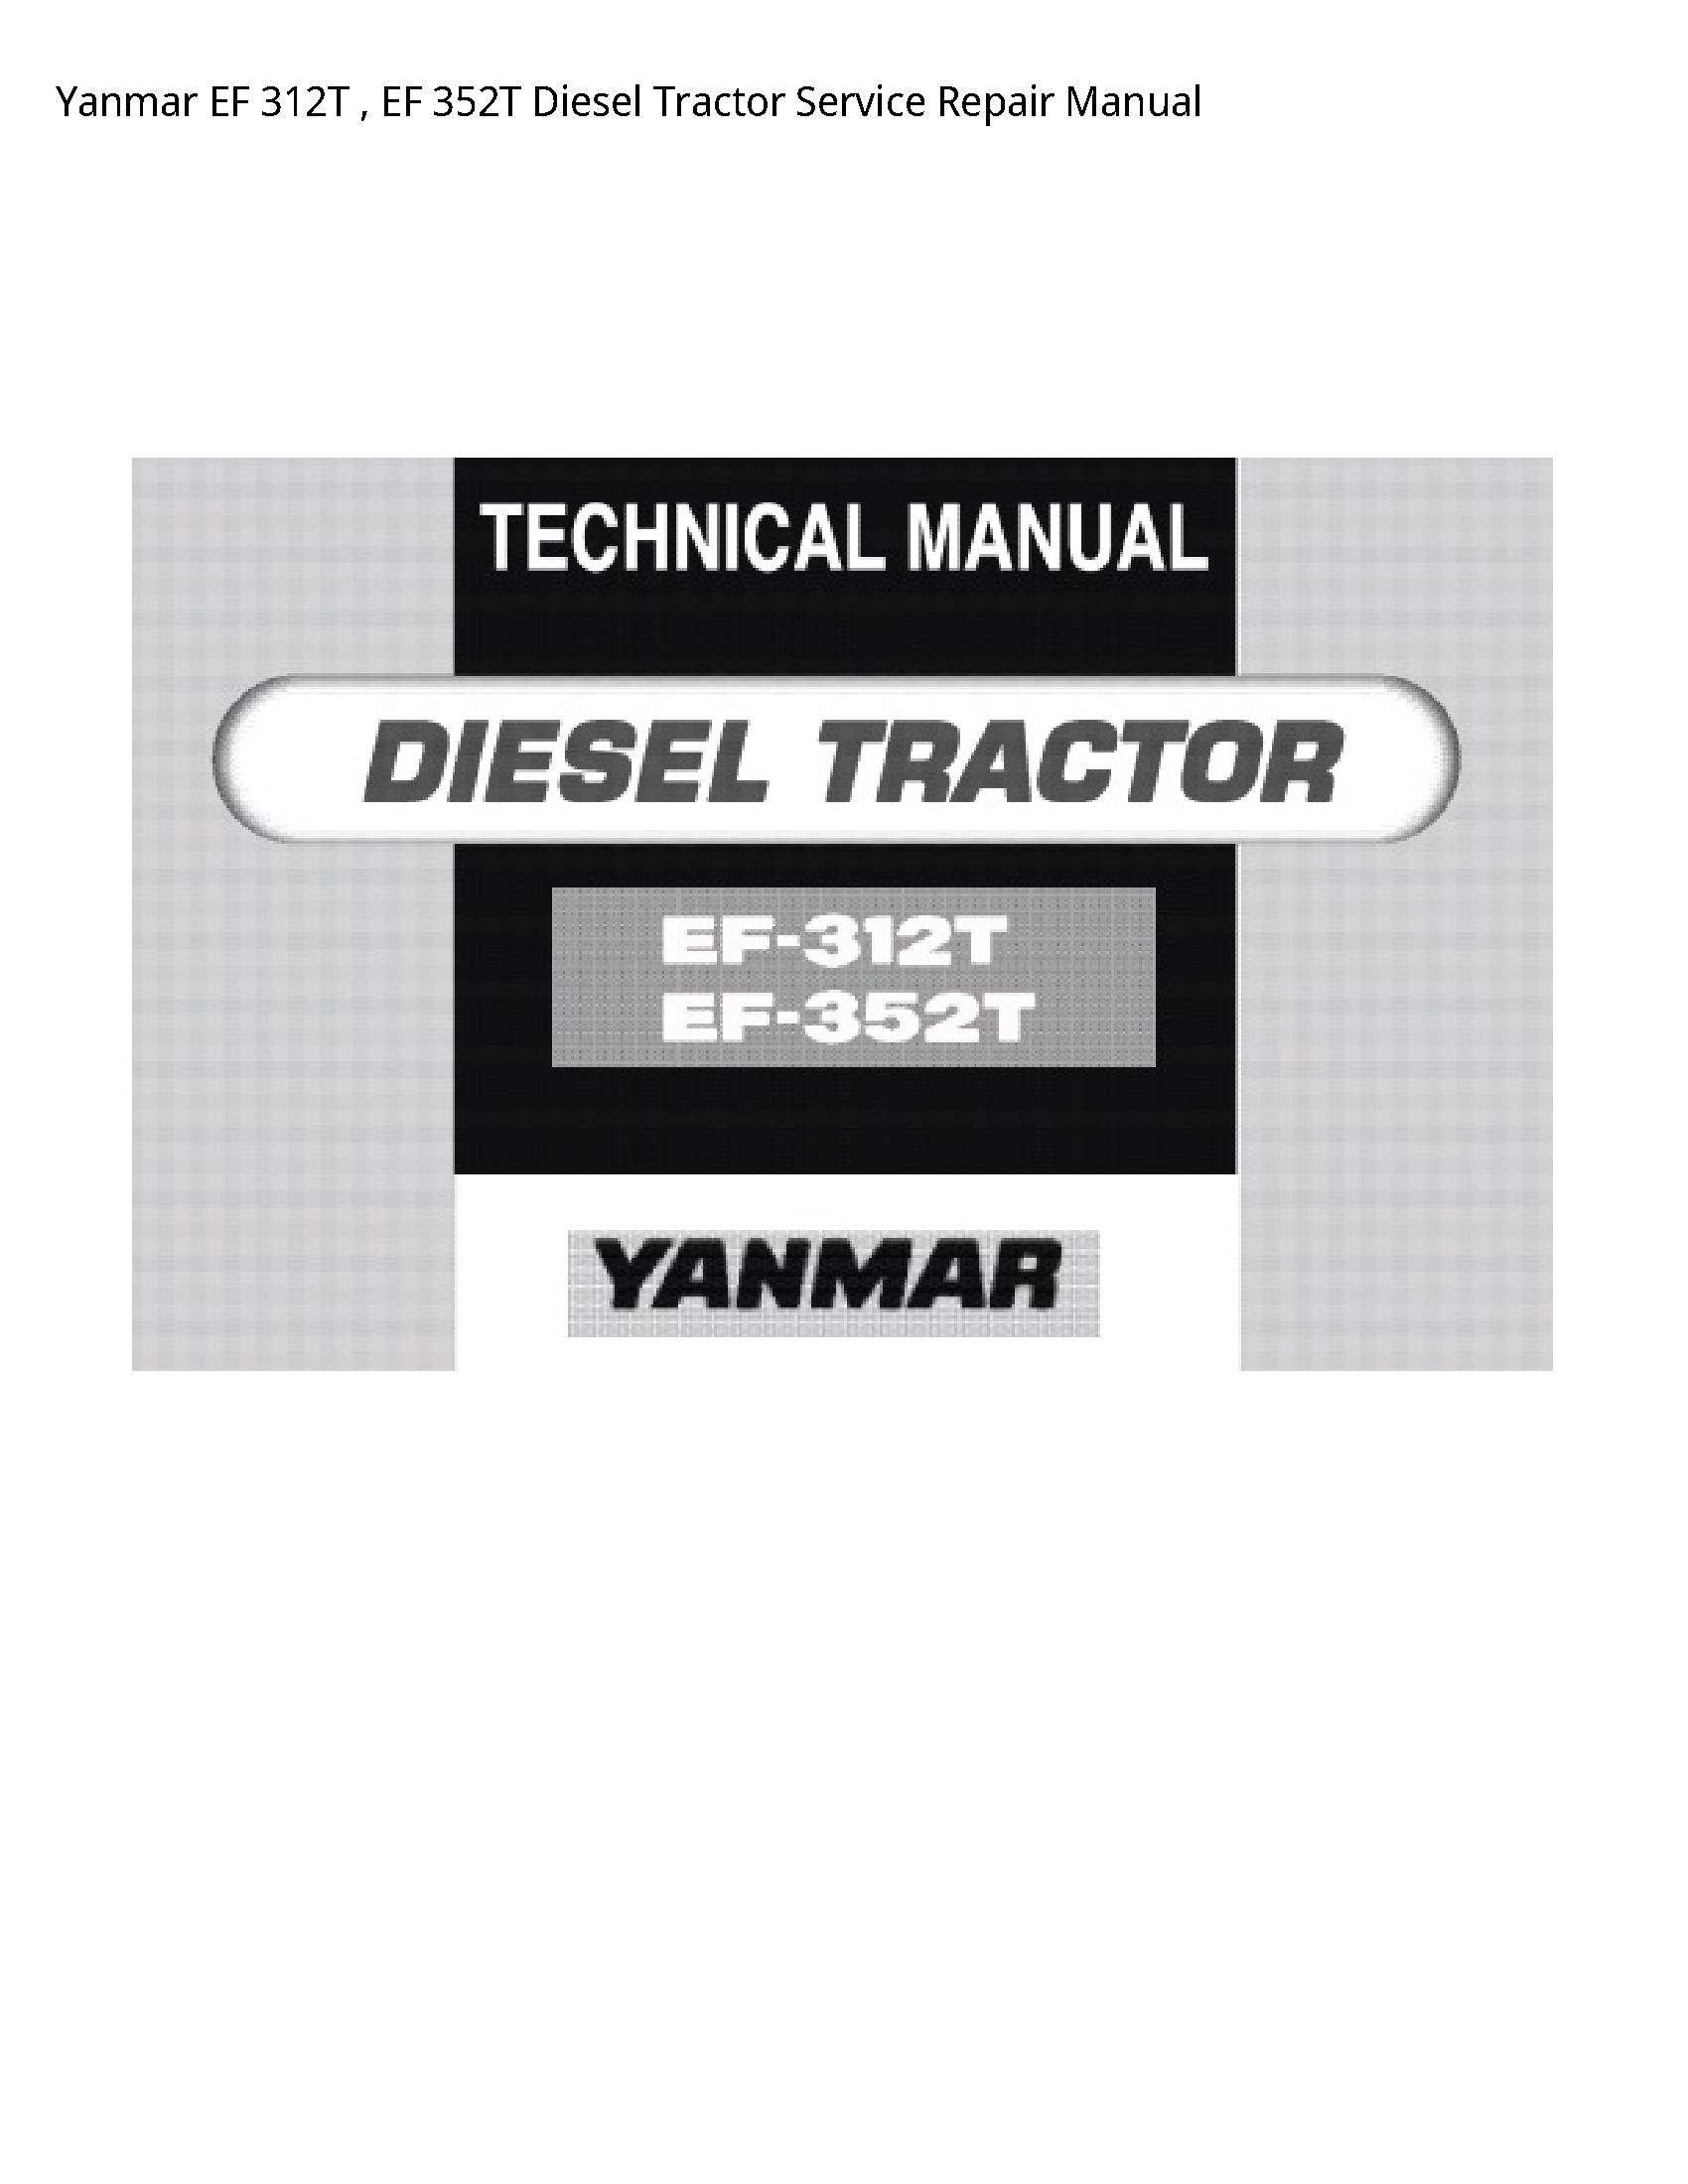 Yanmar 312T EF EF Diesel Tractor manual